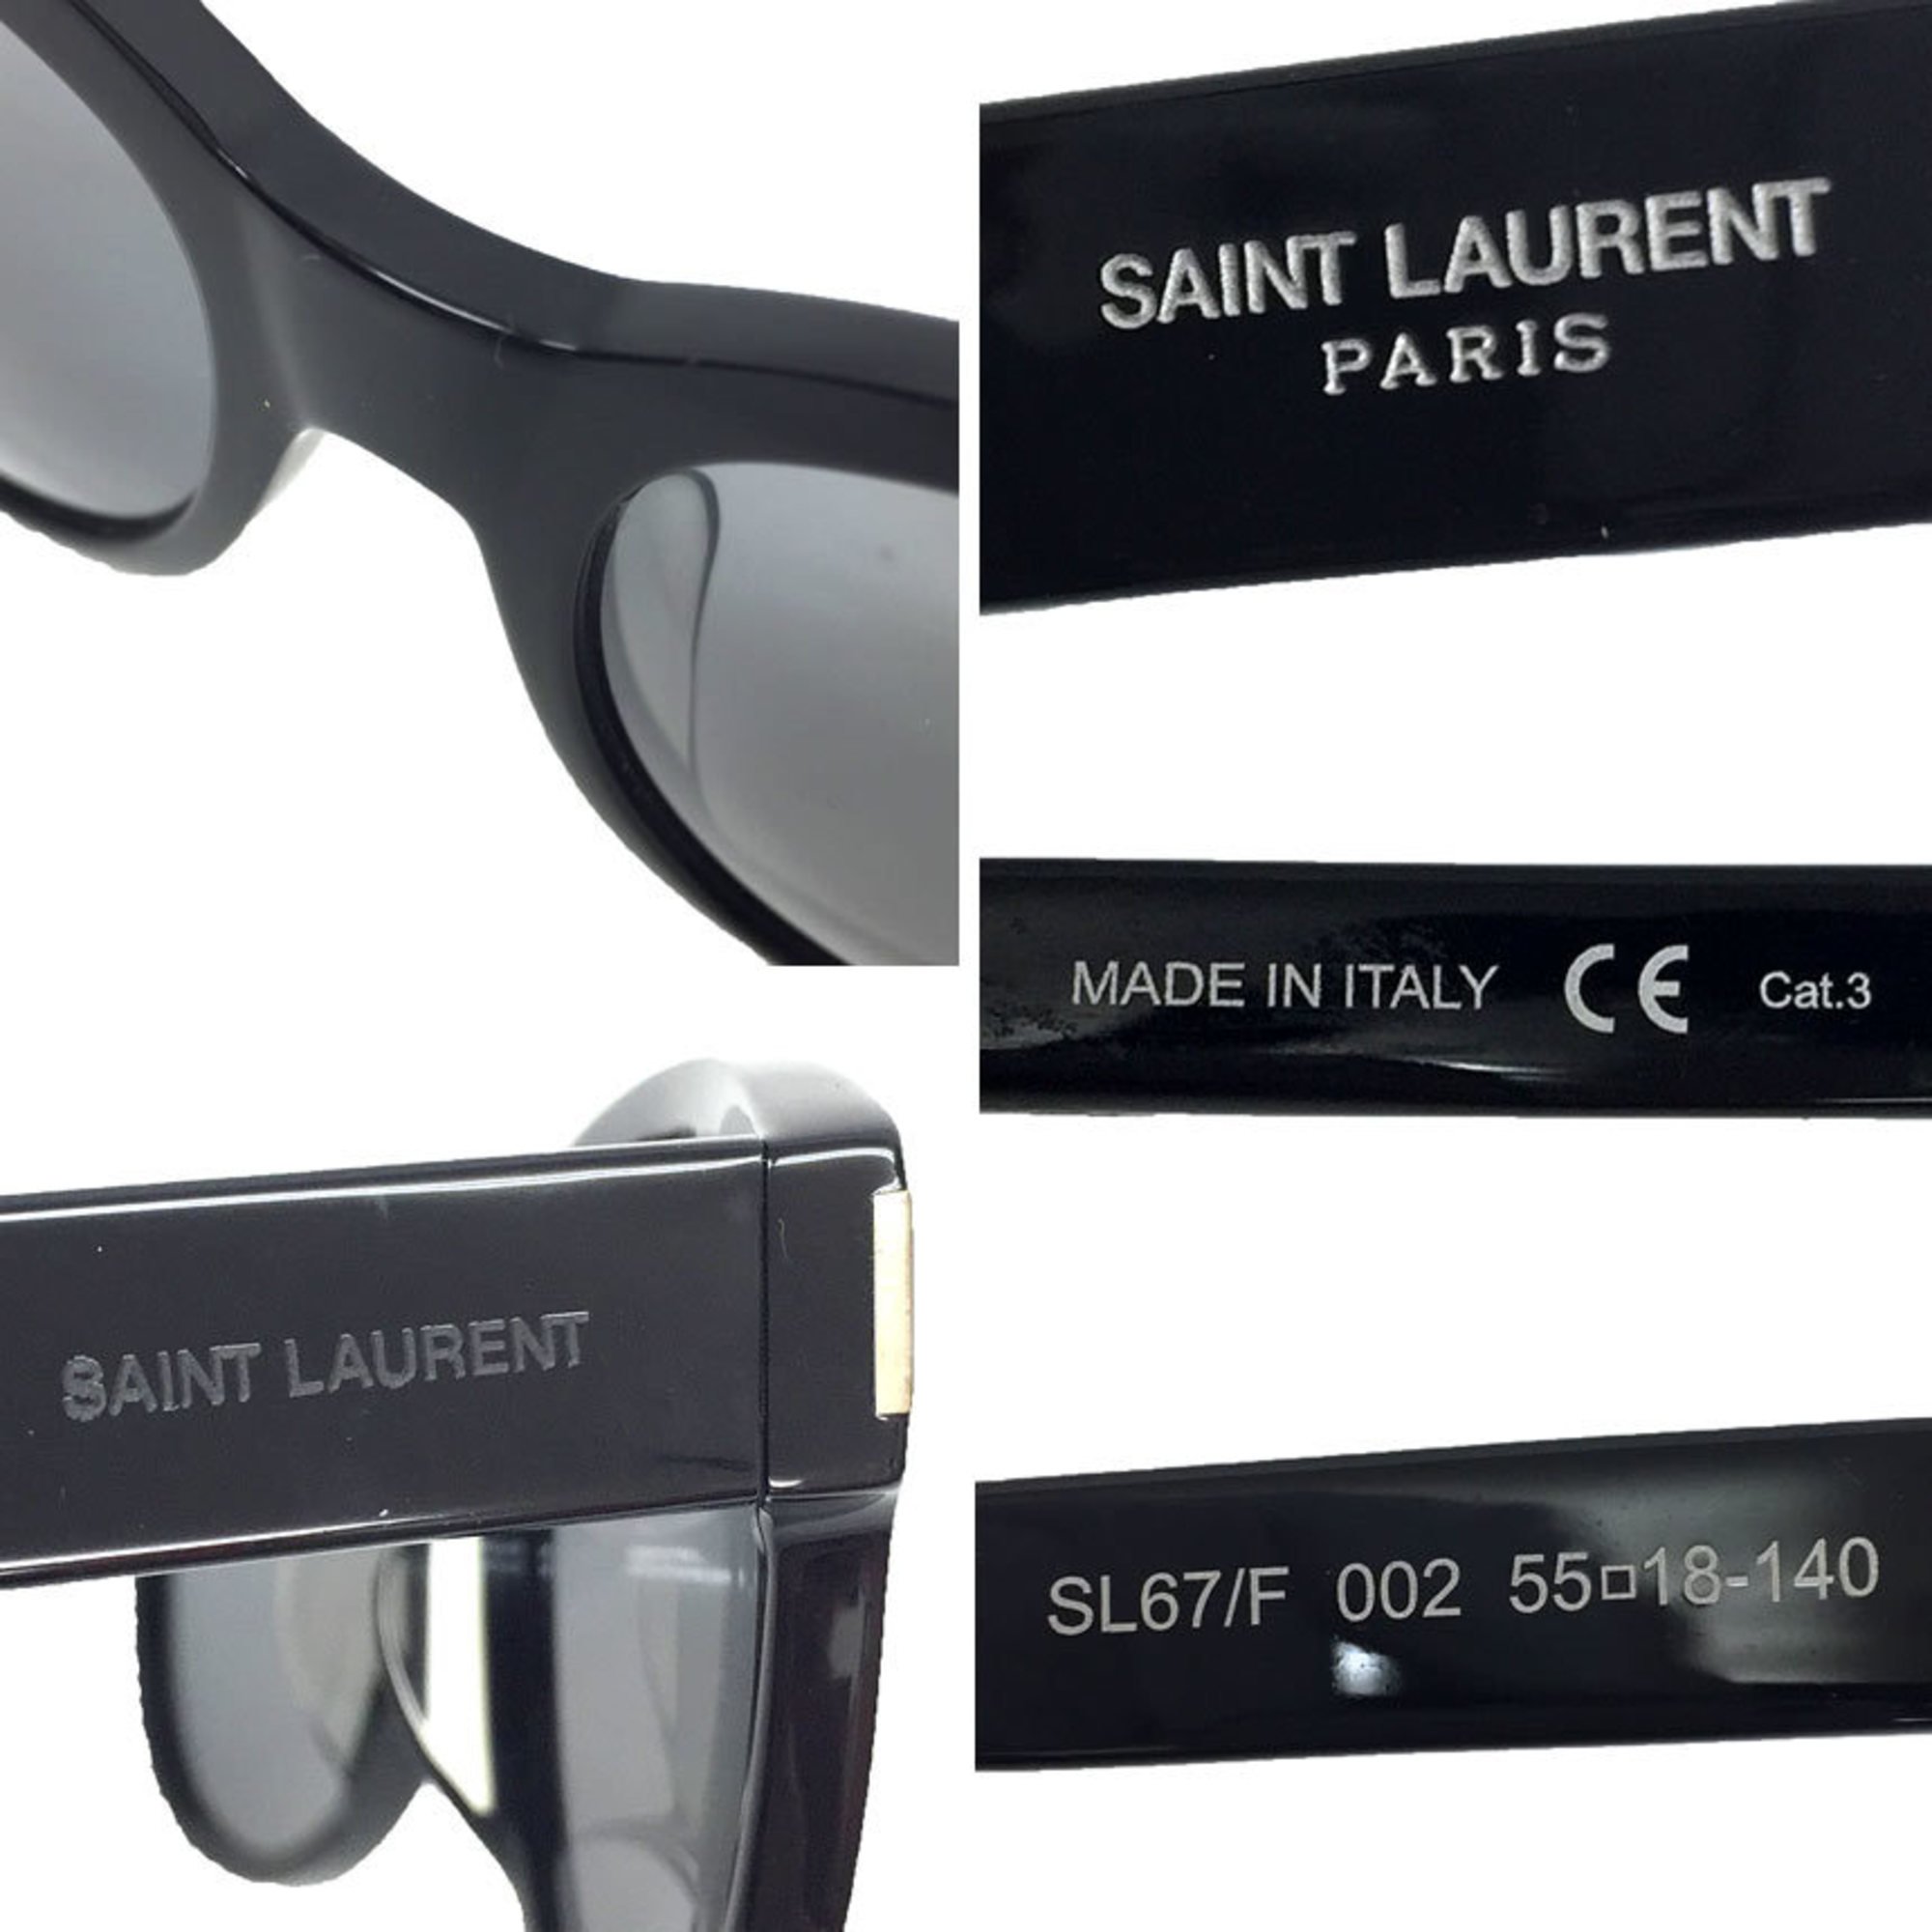 Yves Saint Laurent SAINT LAURENT PARIS Saint Laurent Paris SL67/F Boston Eyewear Men's Women's Unisex YSL Men and Women